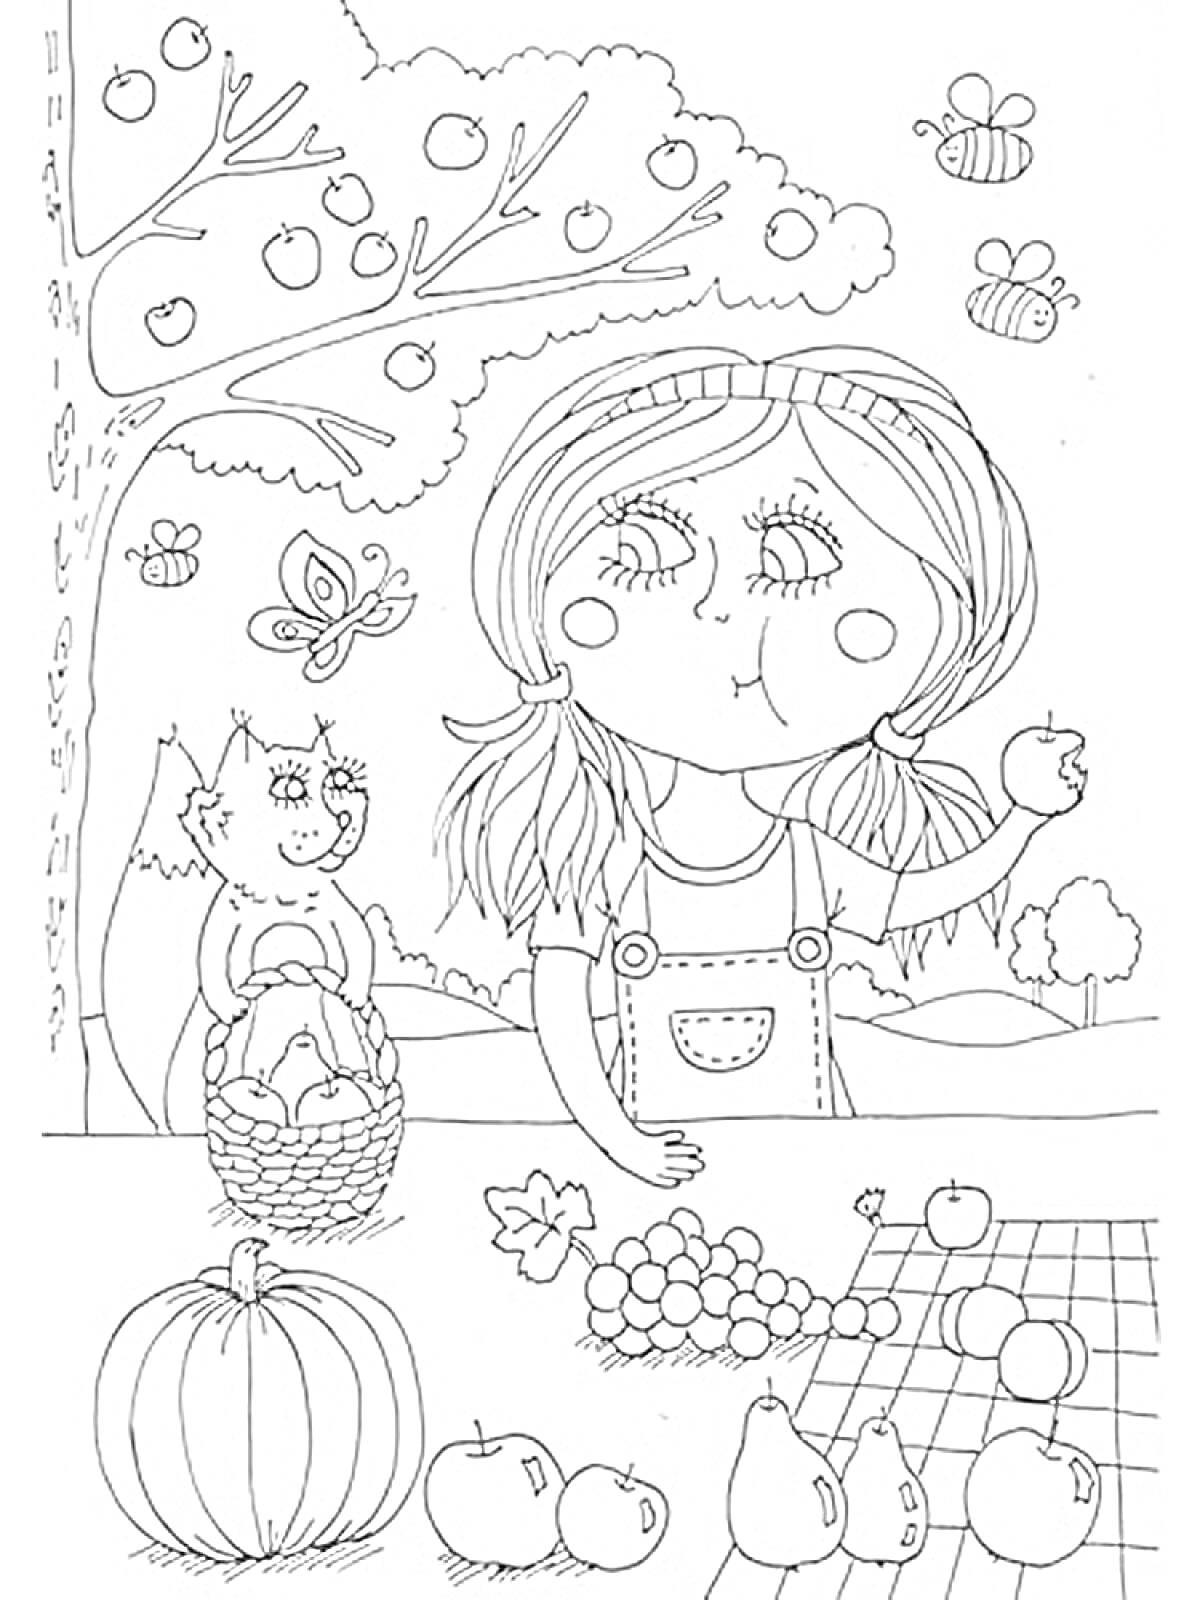 Раскраска Девочка с яблоками в саду, белка с корзинкой, дерево с яблоками, бабочка, пчёлы, виноград, тыква, пейзаж с деревьями